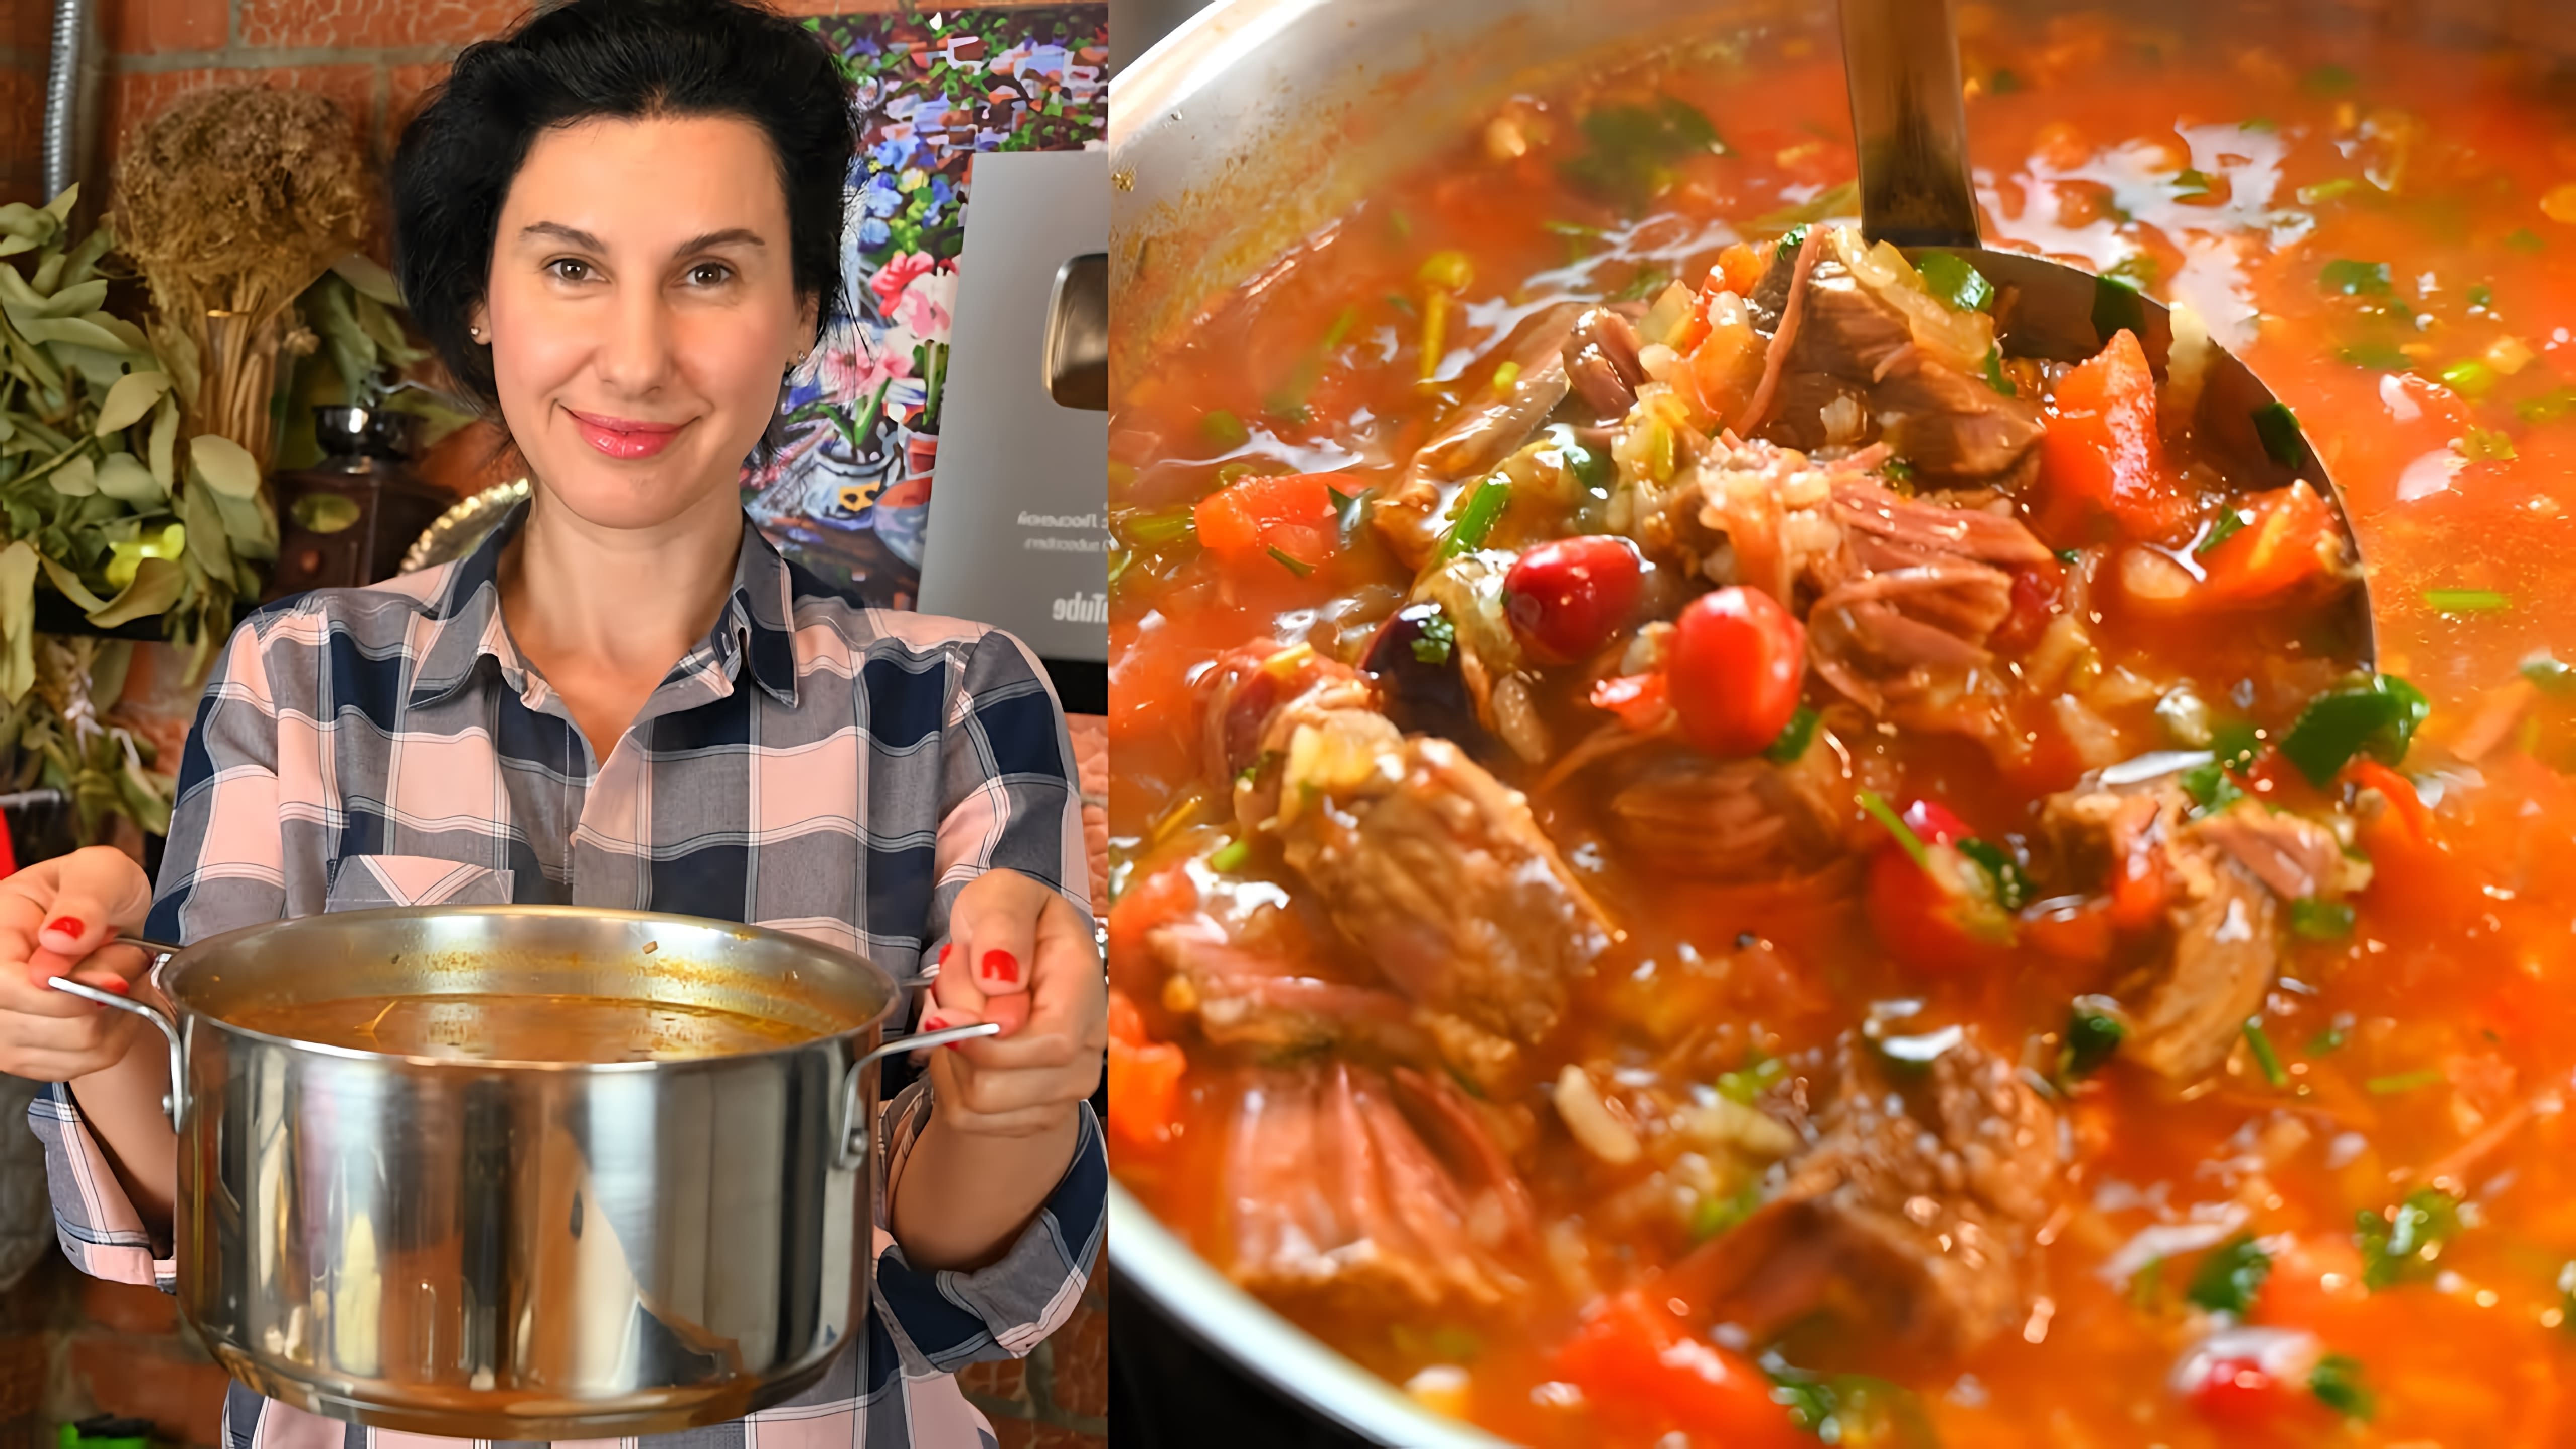 В этом видео демонстрируется процесс приготовления супа харчо, традиционного блюда грузинской кухни